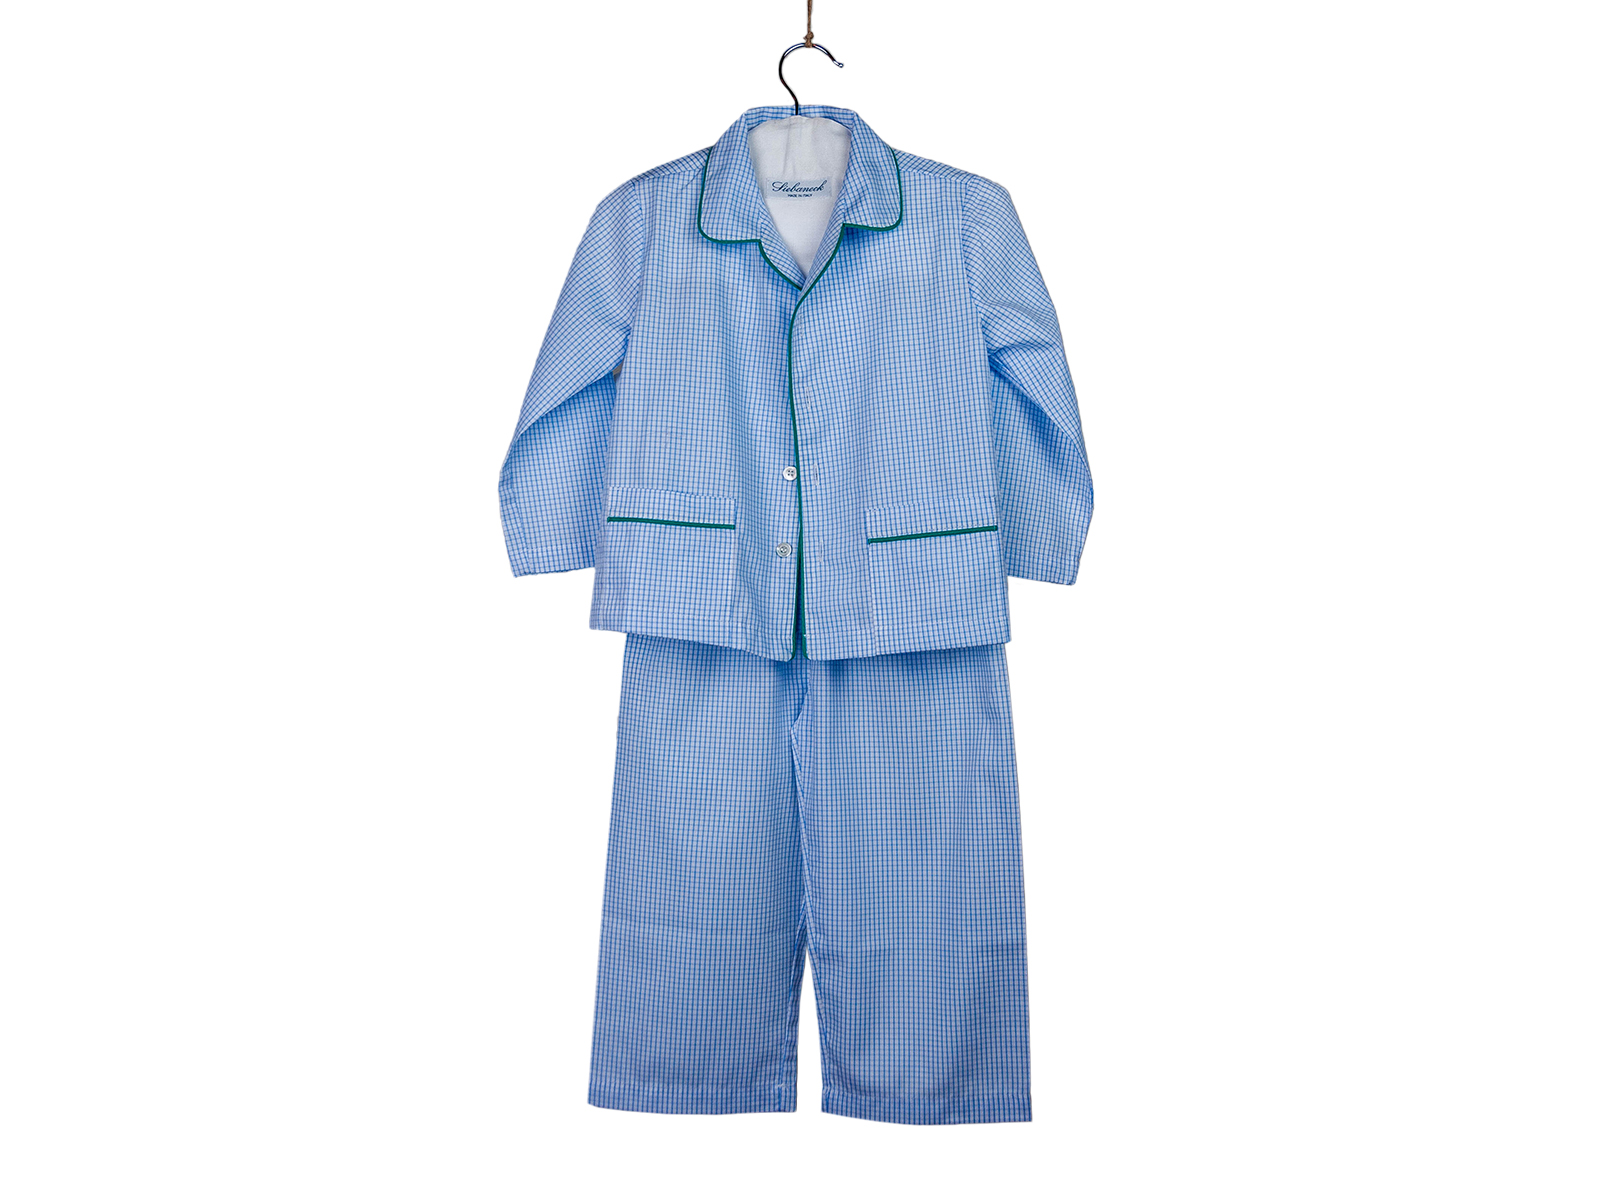 Siebaneck, i pigiami artigianali italiani: - bambino- mod.190 finestrato azzurro